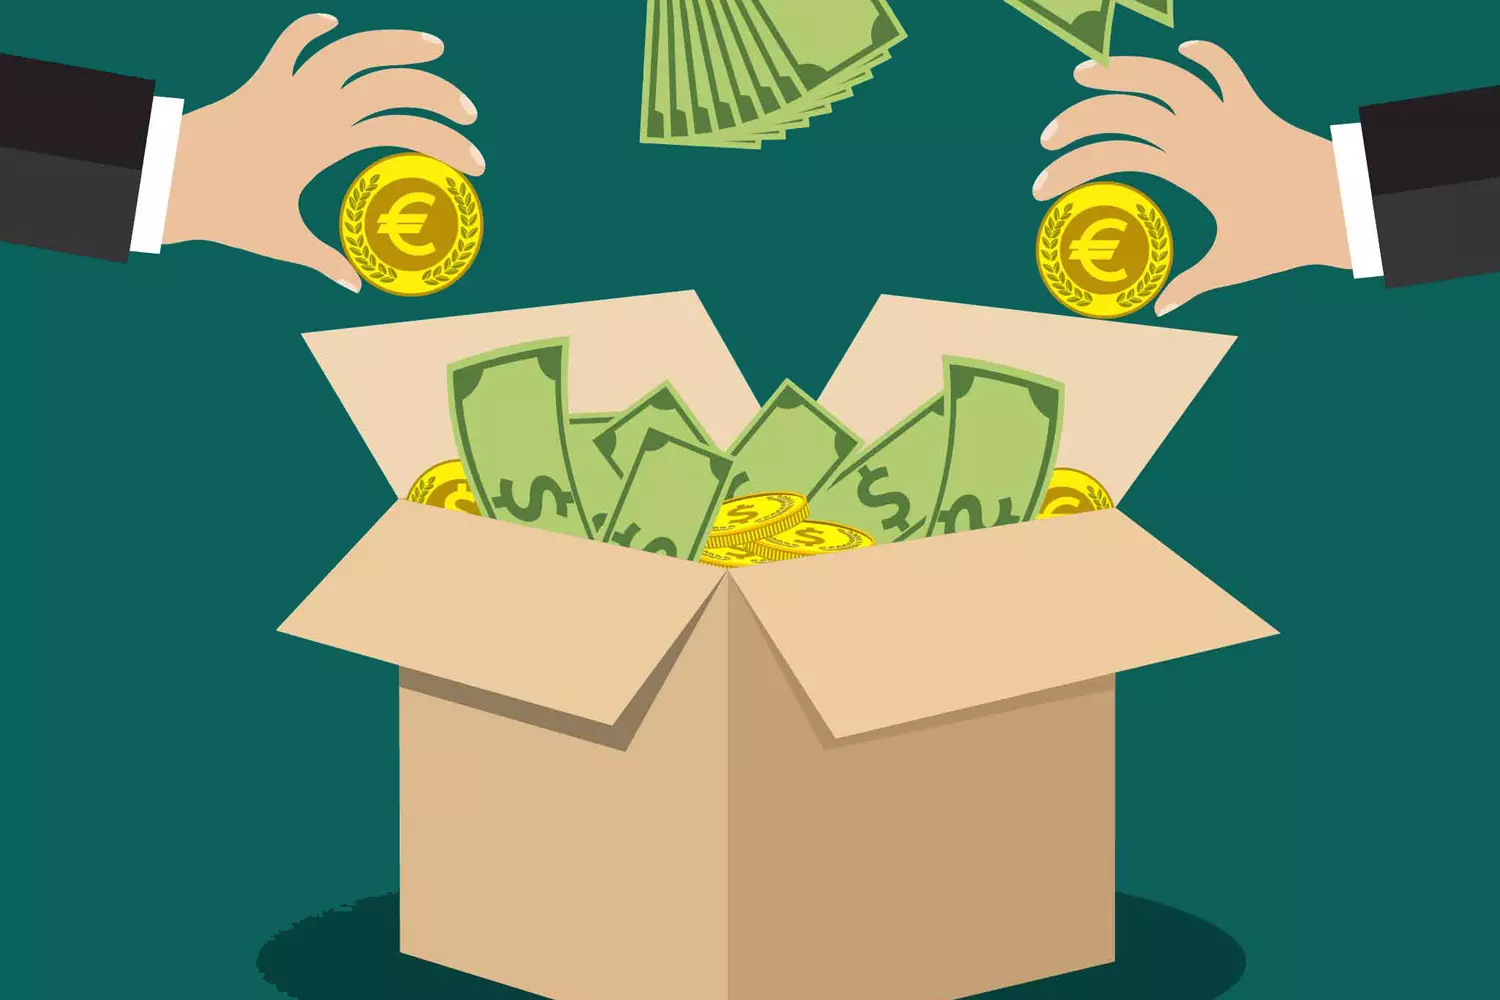 Illlustration einer Kartonschachtel mit der Aufschrift "Crowdfunding". Von links und rechts sieht man Hände, die Geld in die Box werfen.